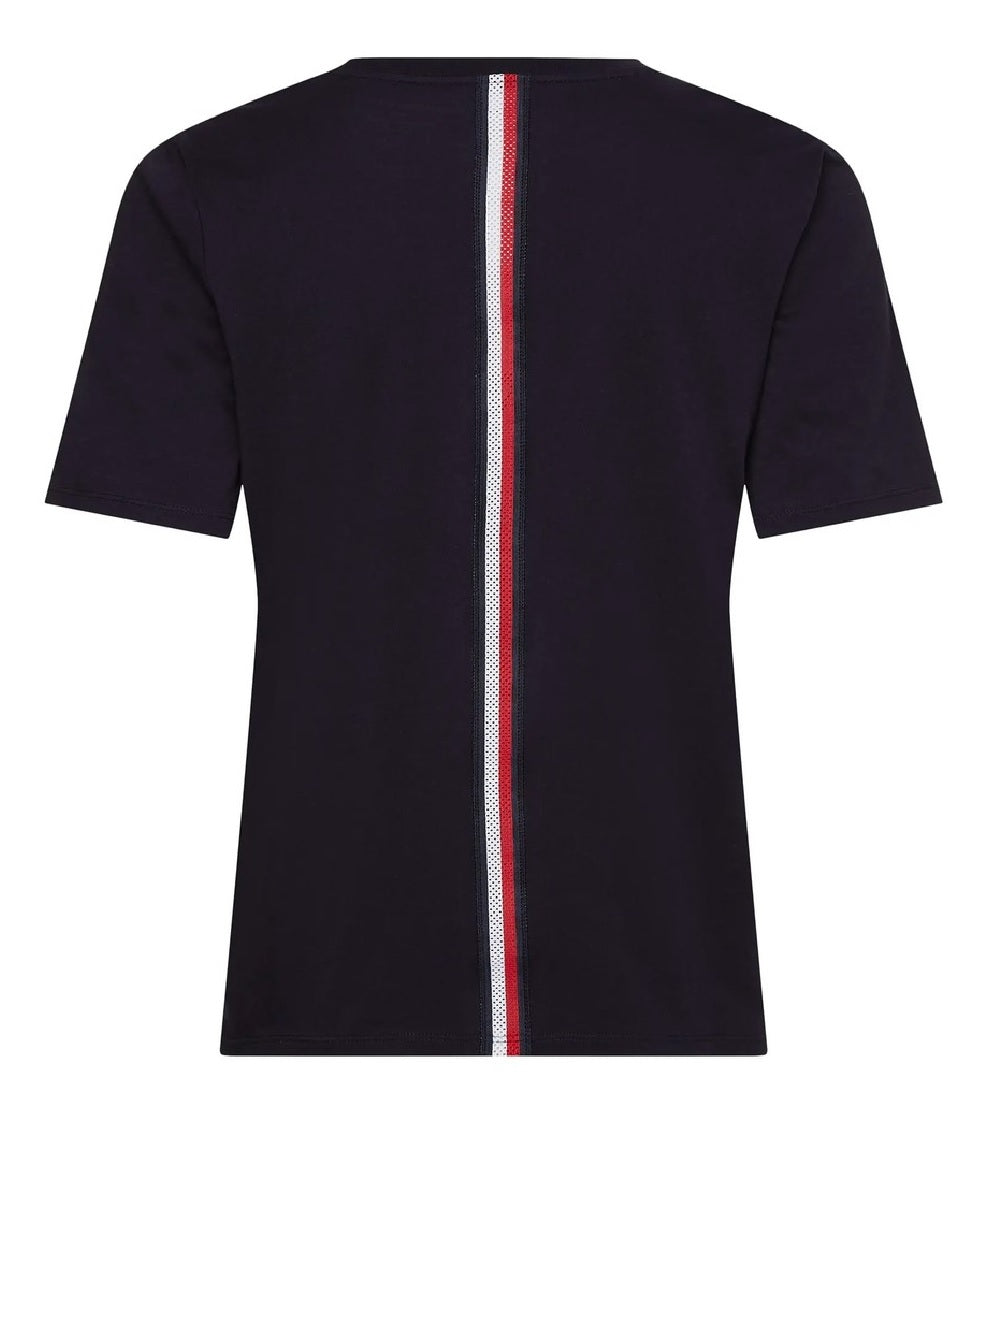 T-shirt Tommy Hilfiger modello S10S101478 con il logo del marchio ricamato al petto e bandiera a fascia nelle spalle.